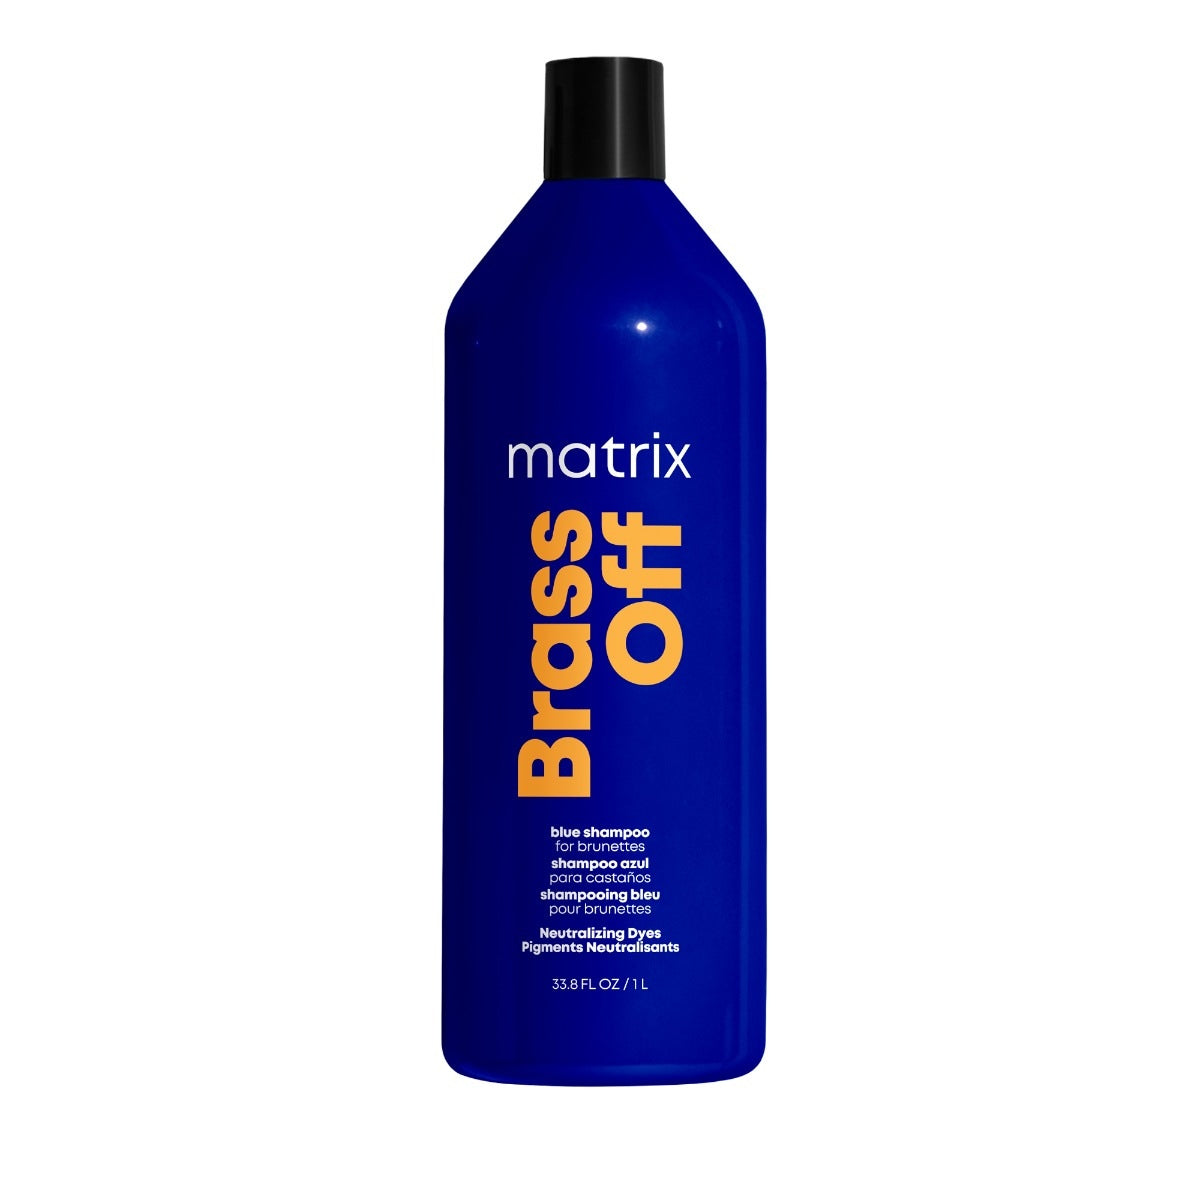 Matrix - Résultats totaux - Laiton de shampooing | 10 oz | 